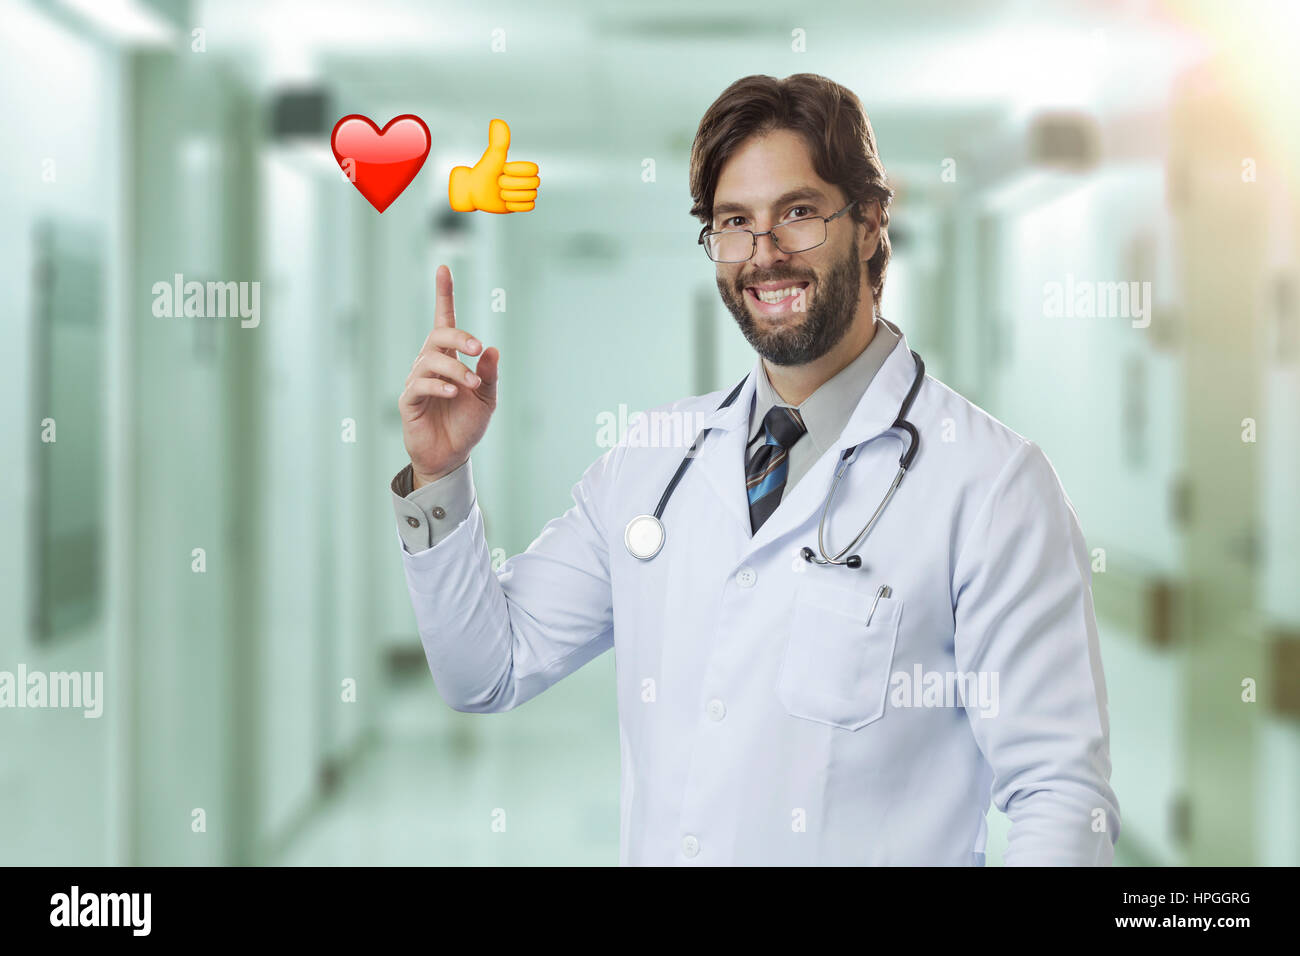 Männlichen Arzt in einem Krankenhaus auf einige Emojis. Stockfoto